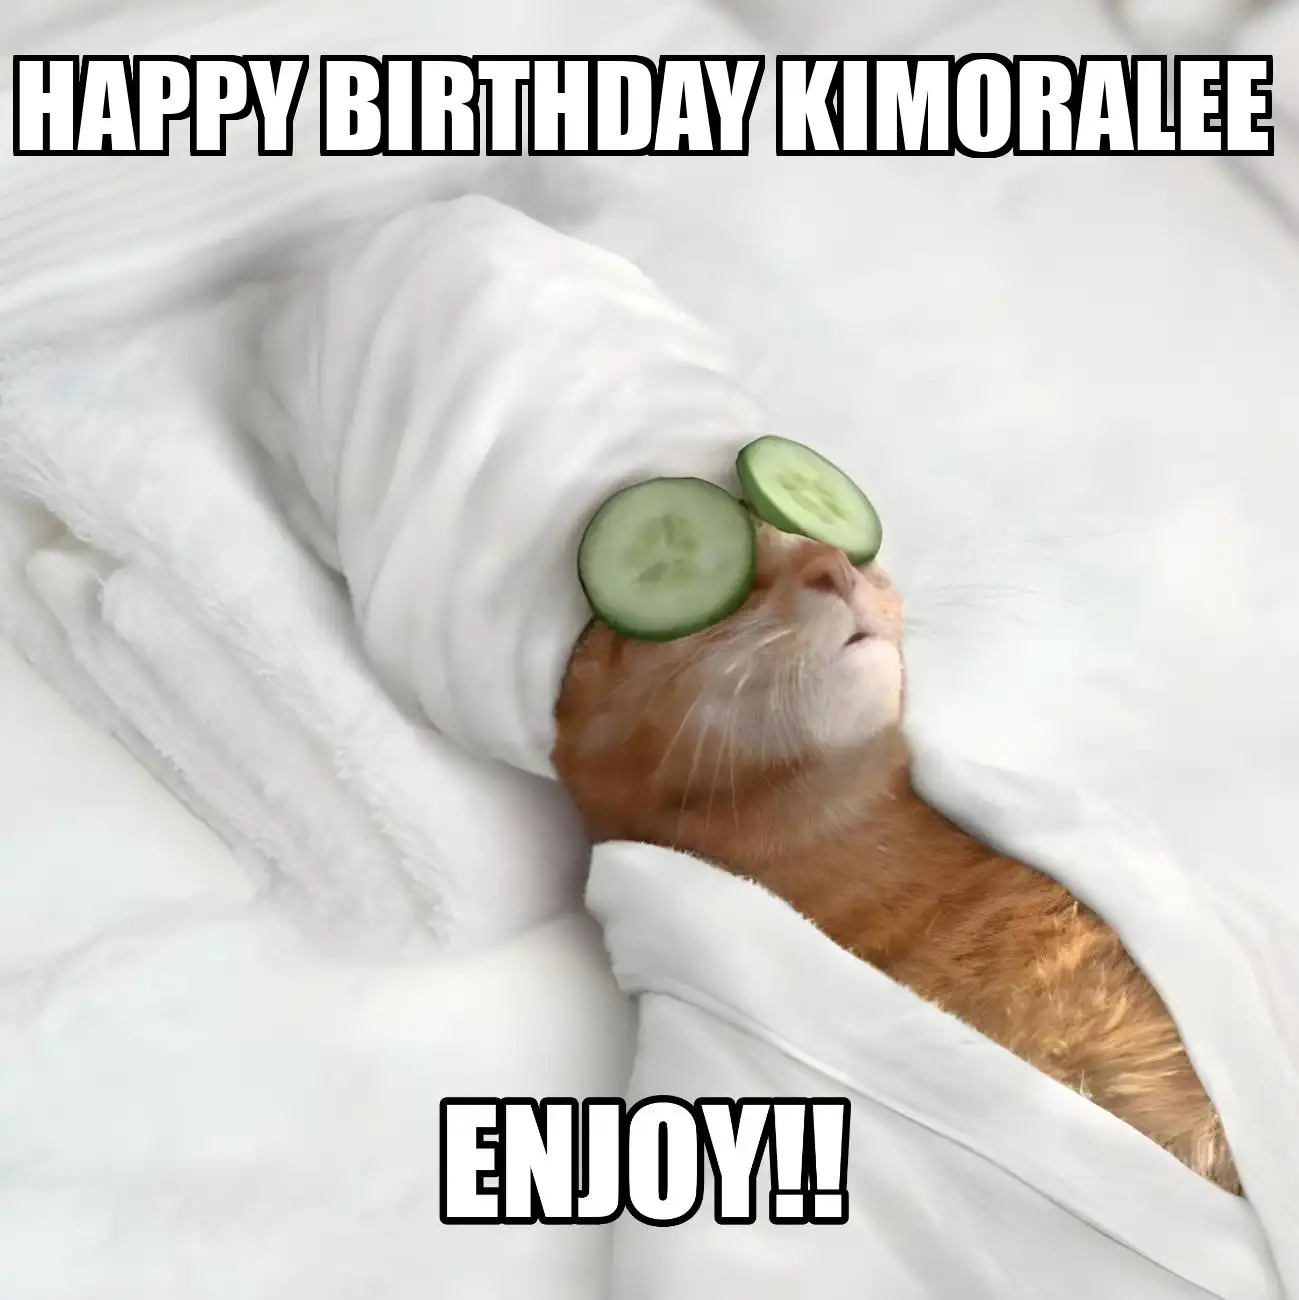 Happy Birthday Kimoralee Enjoy Cat Meme